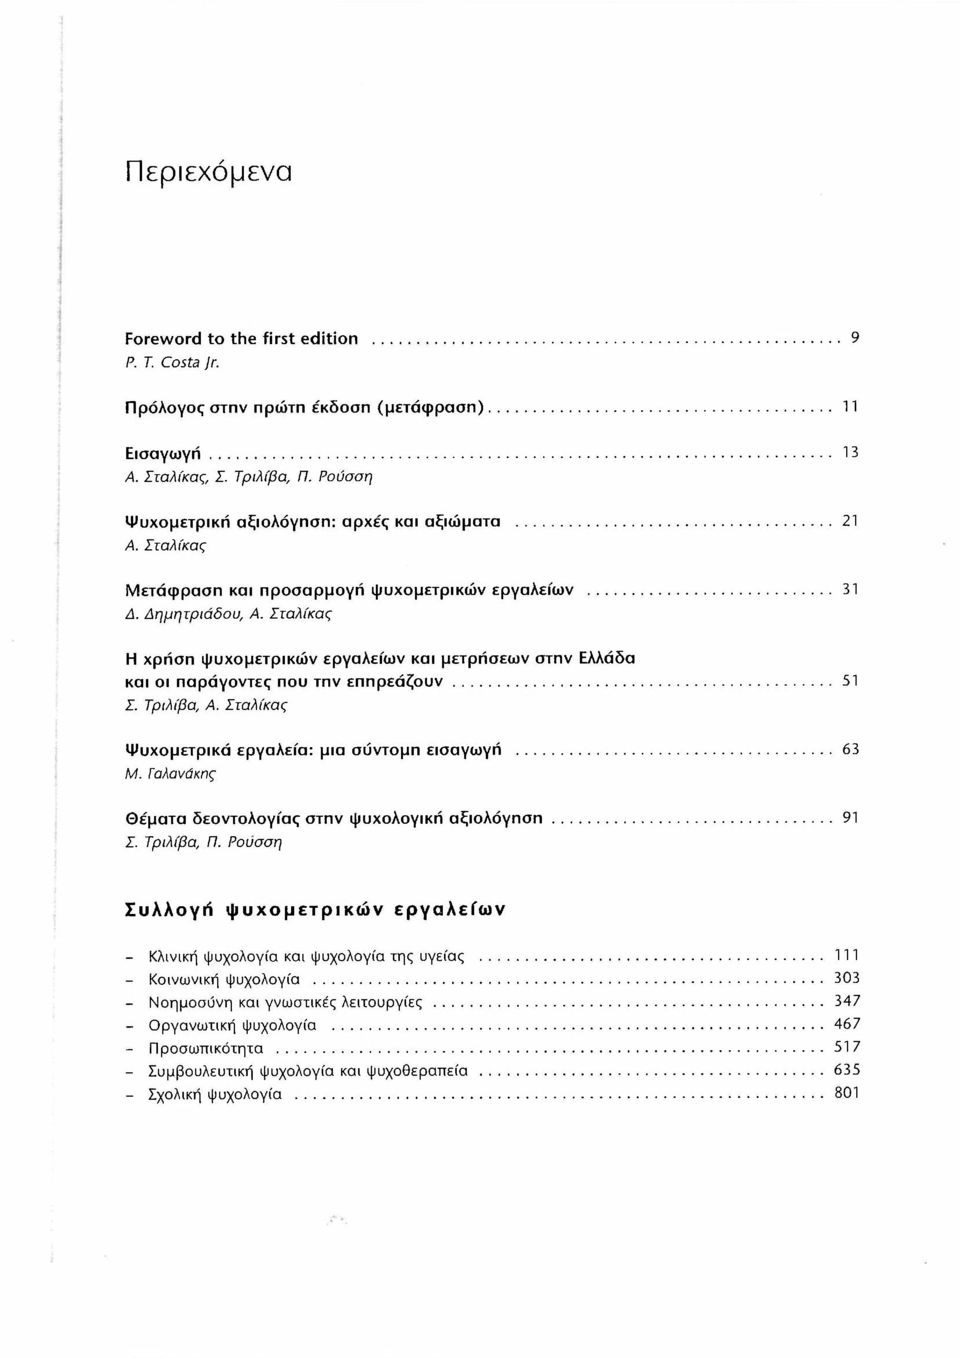 Τα ψυχομετρικά εργαλεία στην ΕΑΑάδα - PDF Free Download